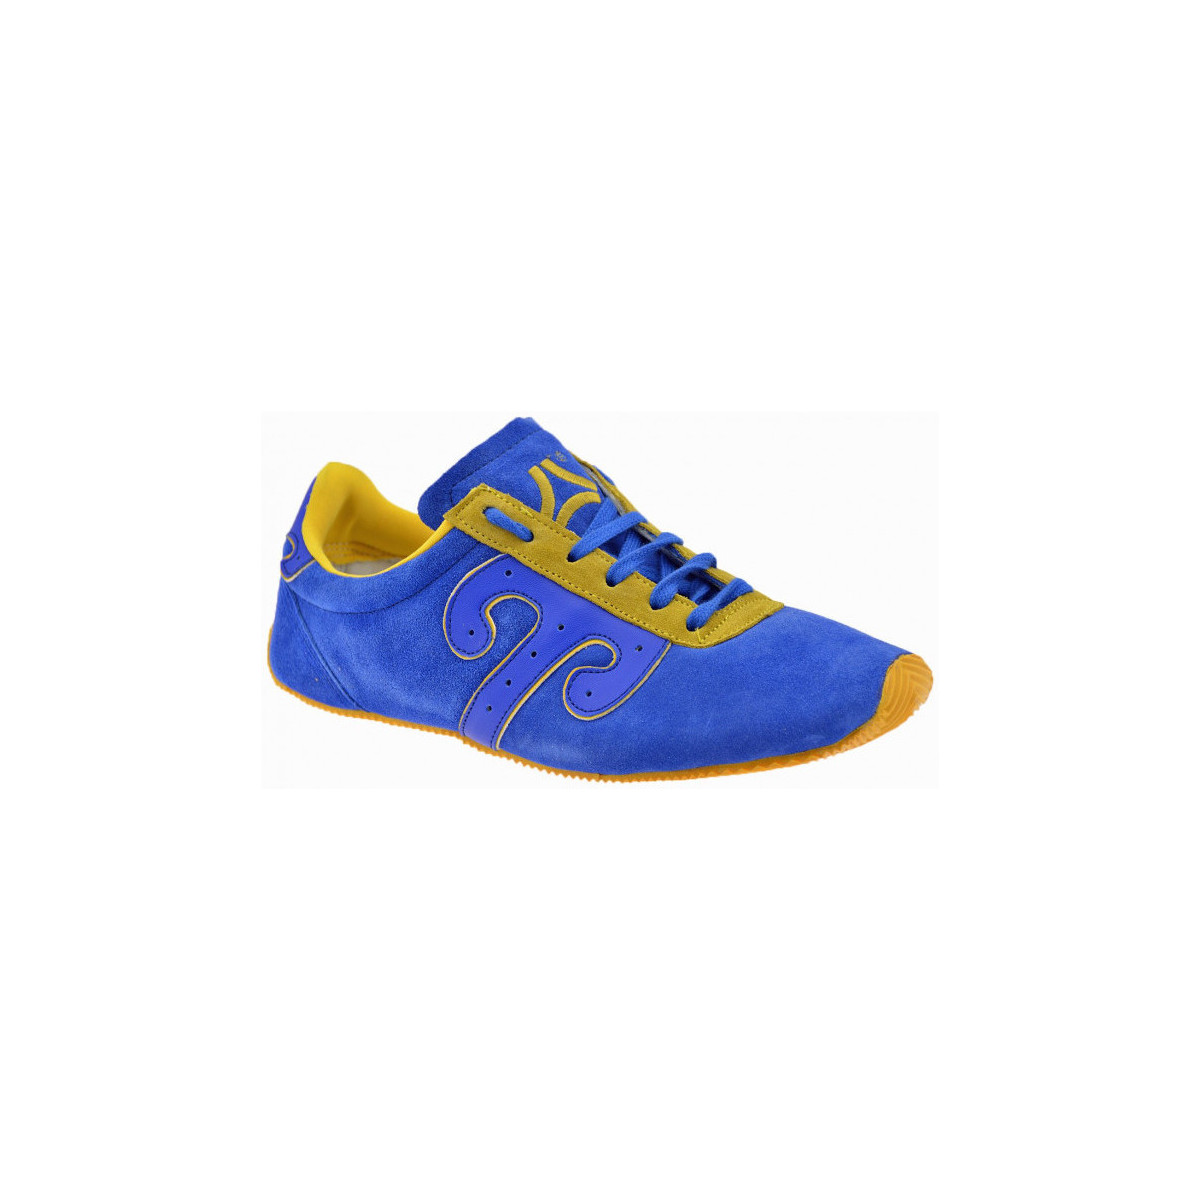 Scarpe Uomo Sneakers Wushu Ruyi Marziale Blu